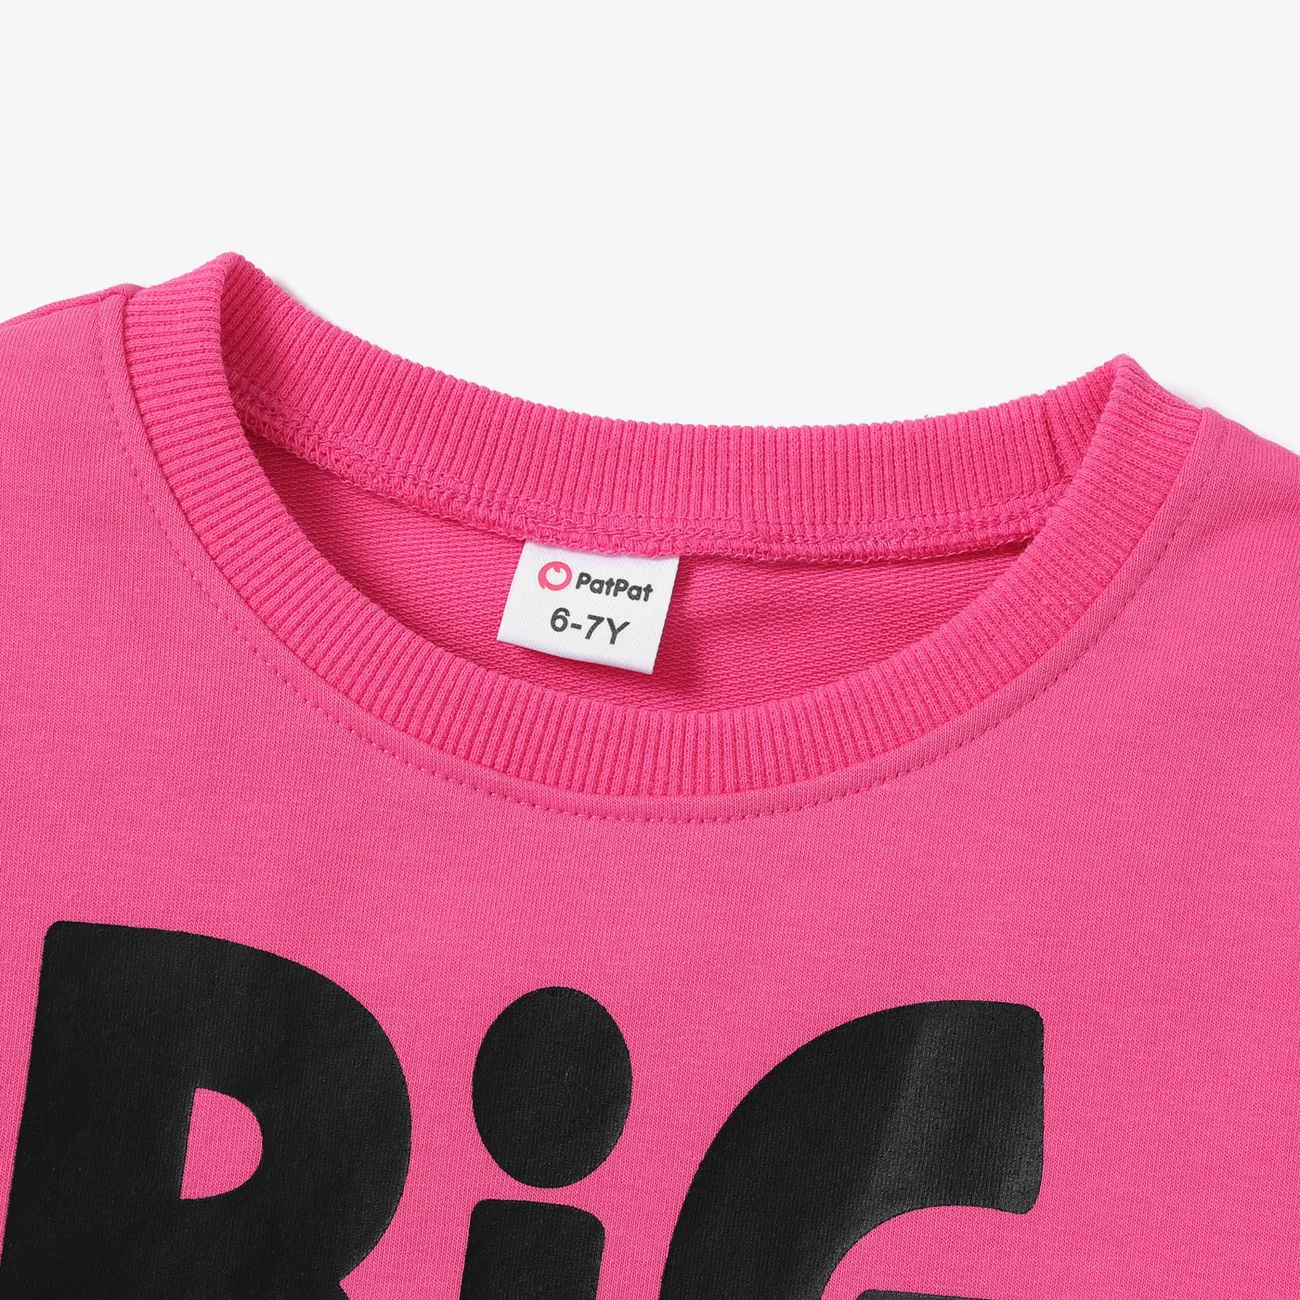 Enfants Fille Lettre Pull Sweat-shirt Rose Vif big image 1